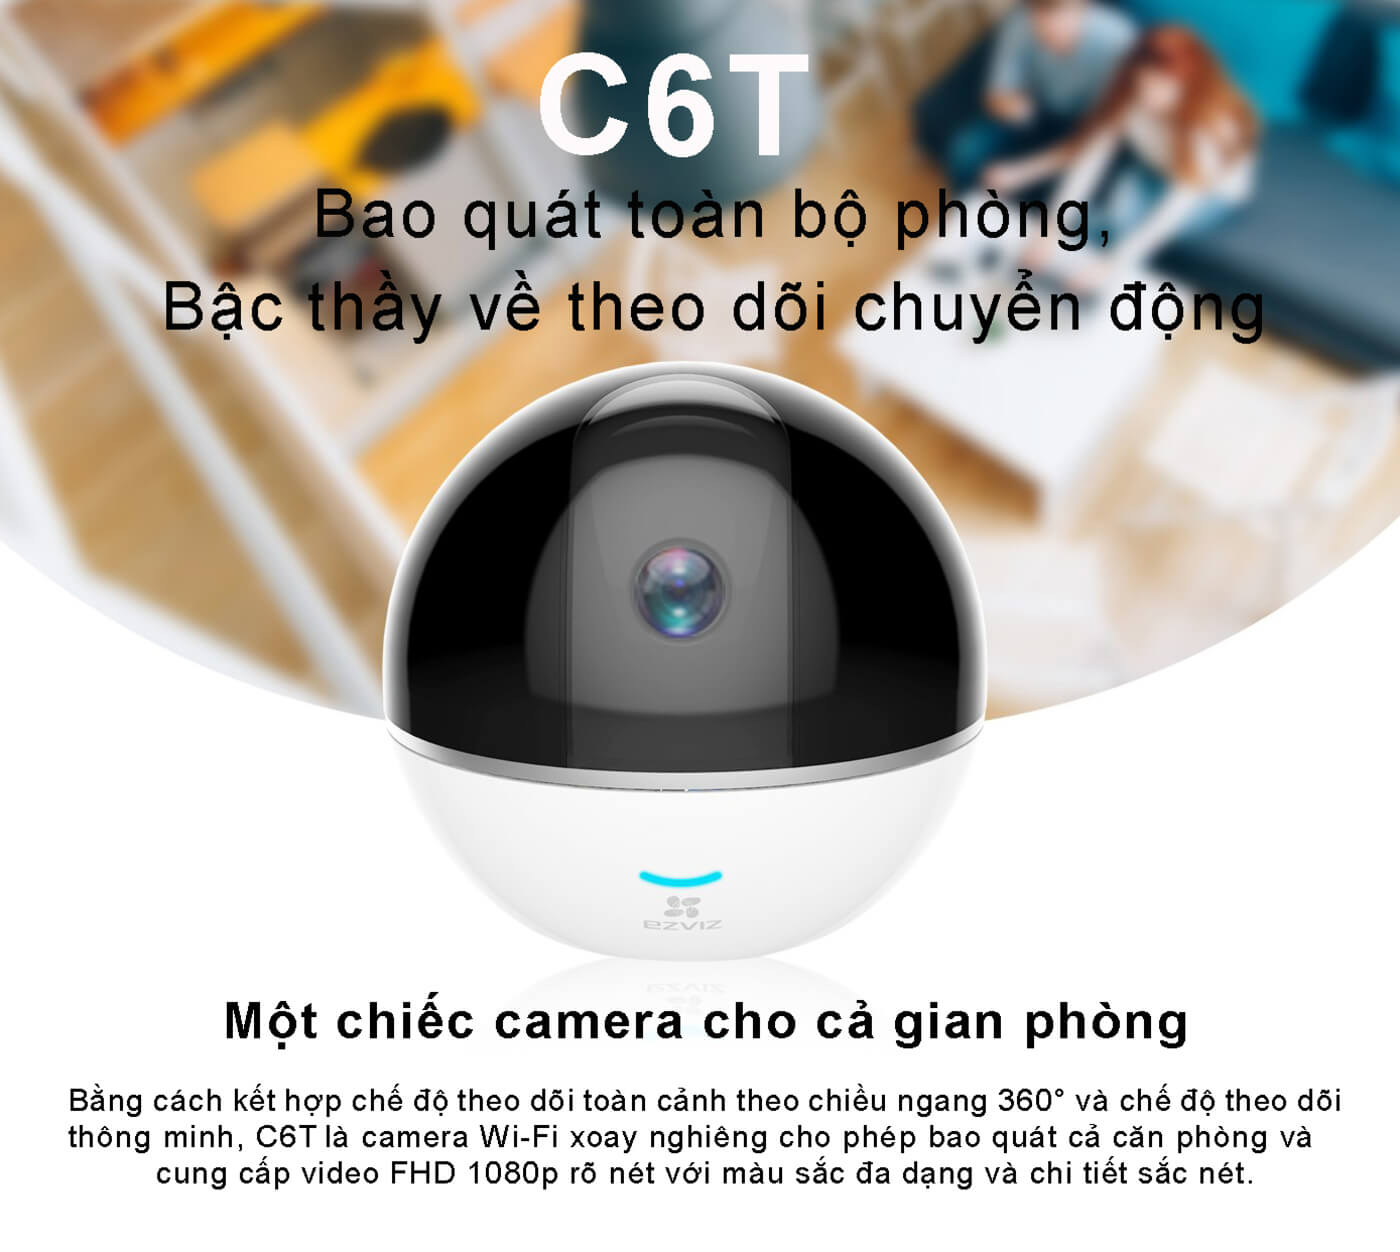 Camera Ezviz C6T 2MP hình ảnh Full HD 1080p sắt nét